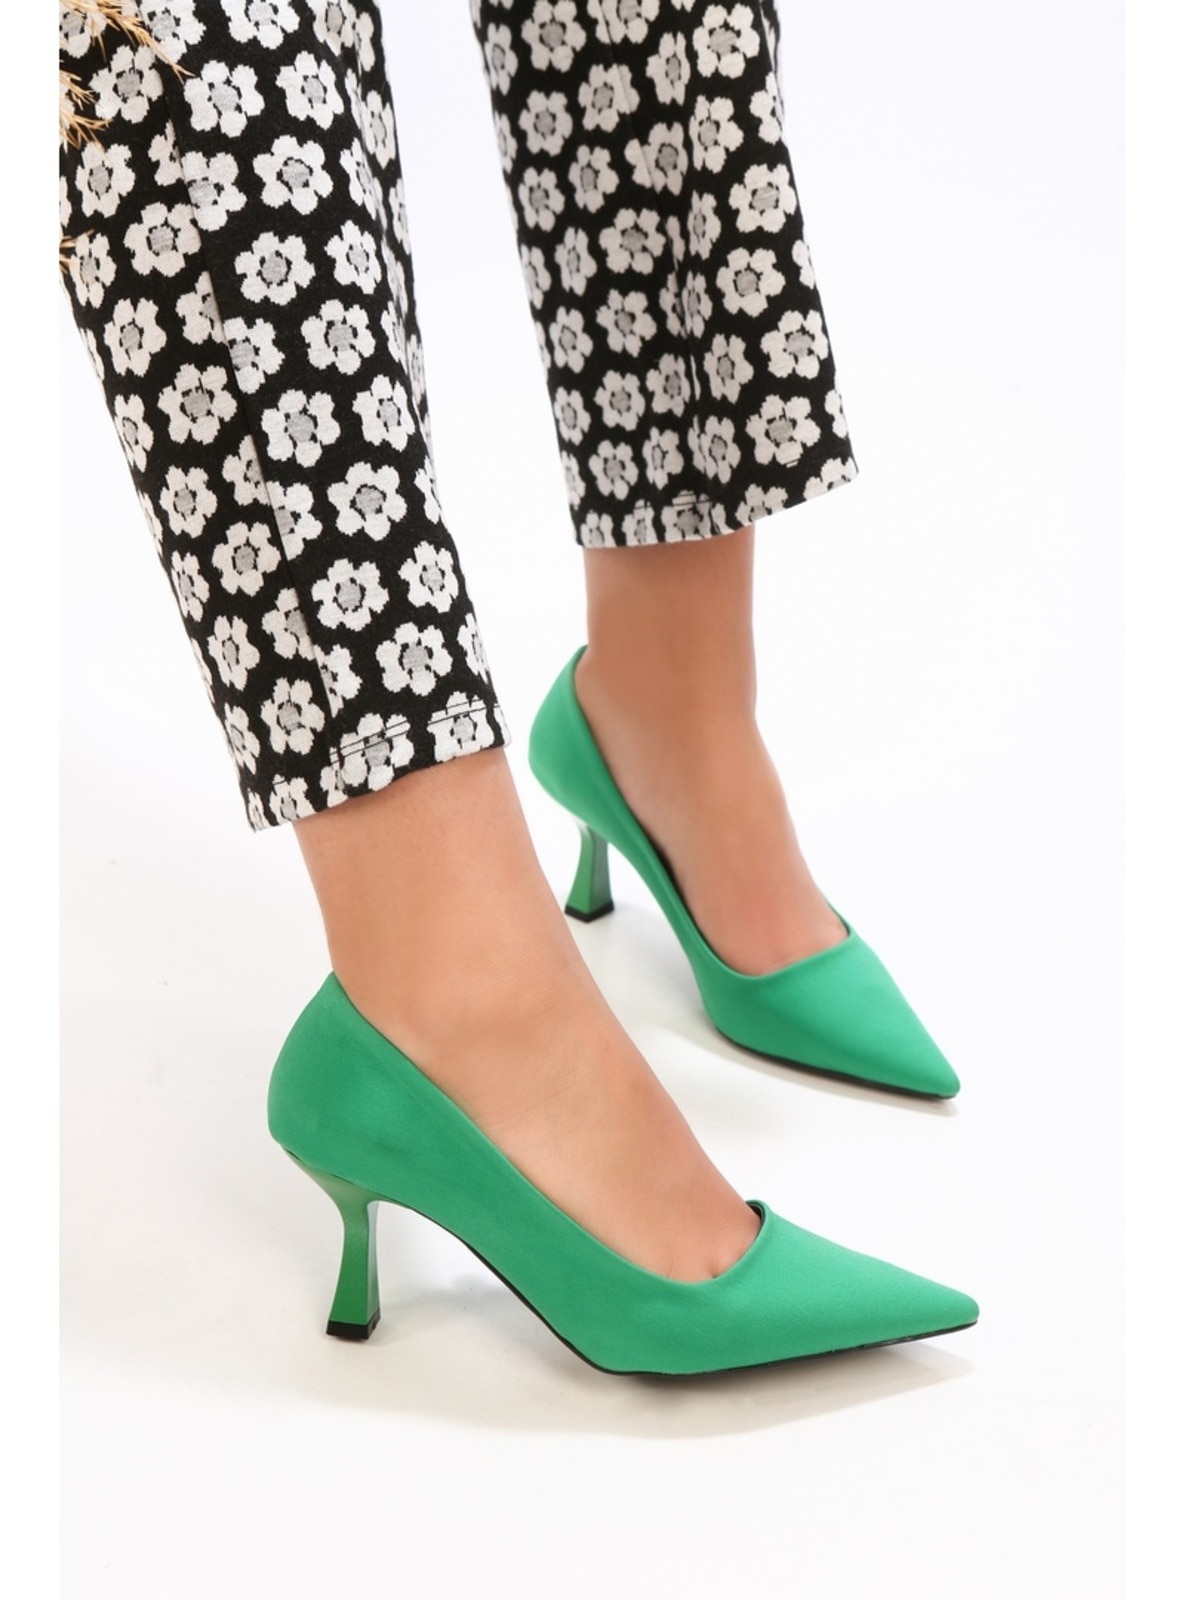 Stilettos & Shoes - Light Green - Heels